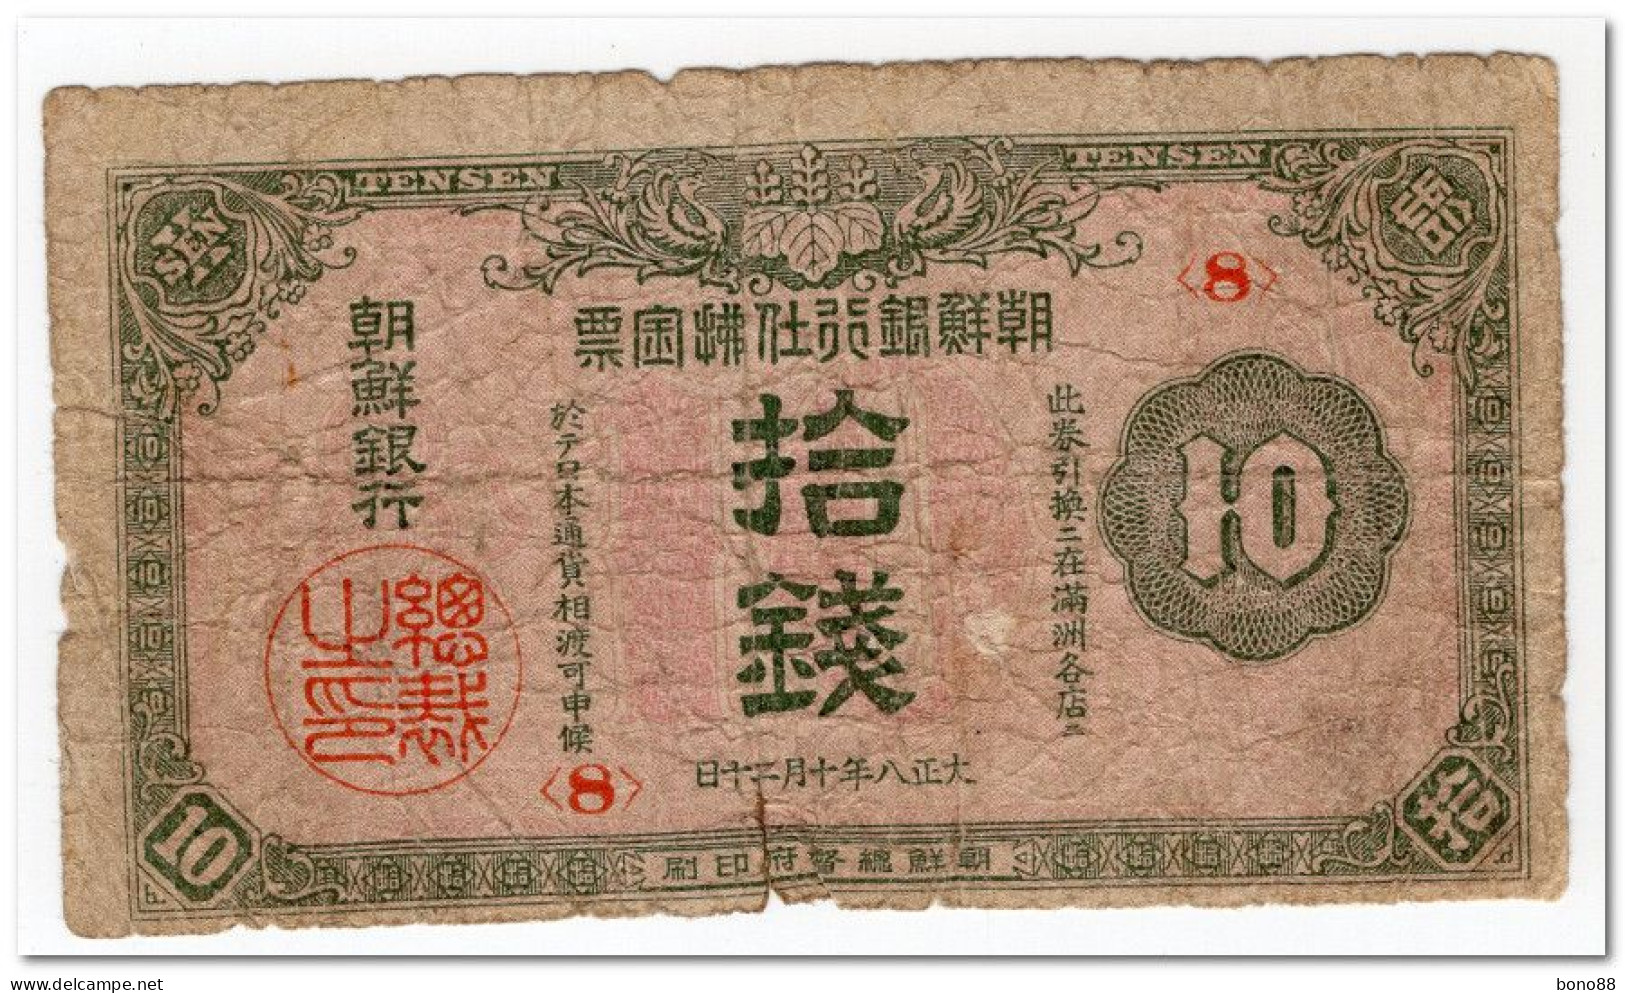 KOREA, BANK OF CHOSEN, 10 SEN,1919,P.23,POOR,TEARS - Corea Del Sur